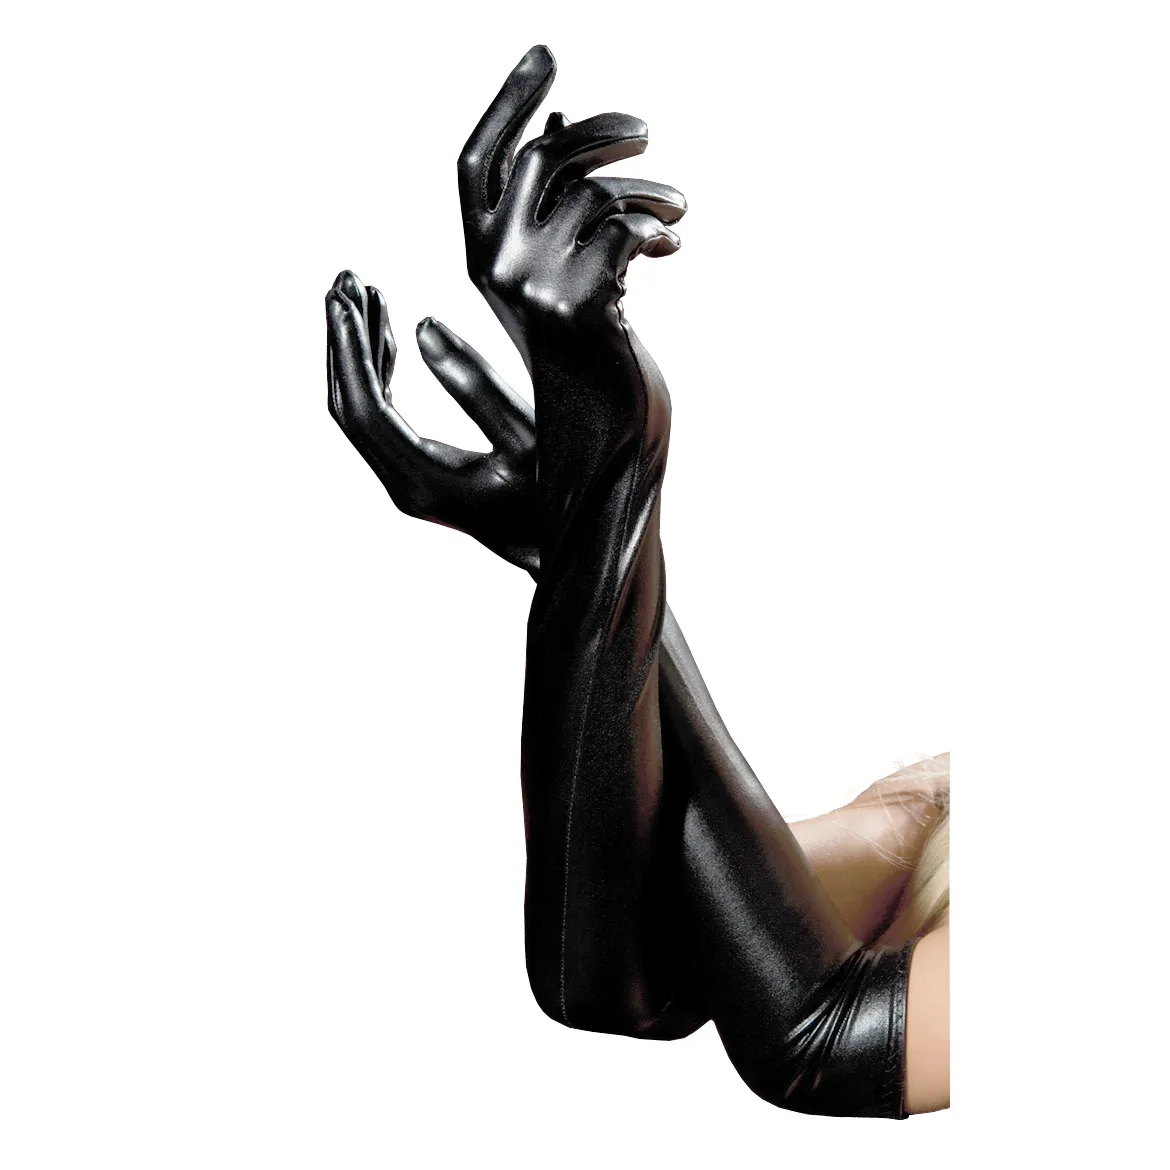 Сексуальные женские длинные перчатки пять пальцев искусственной кожи латекс готические перчатки черный мокрый вид Локоть длина ПВХ перчатки